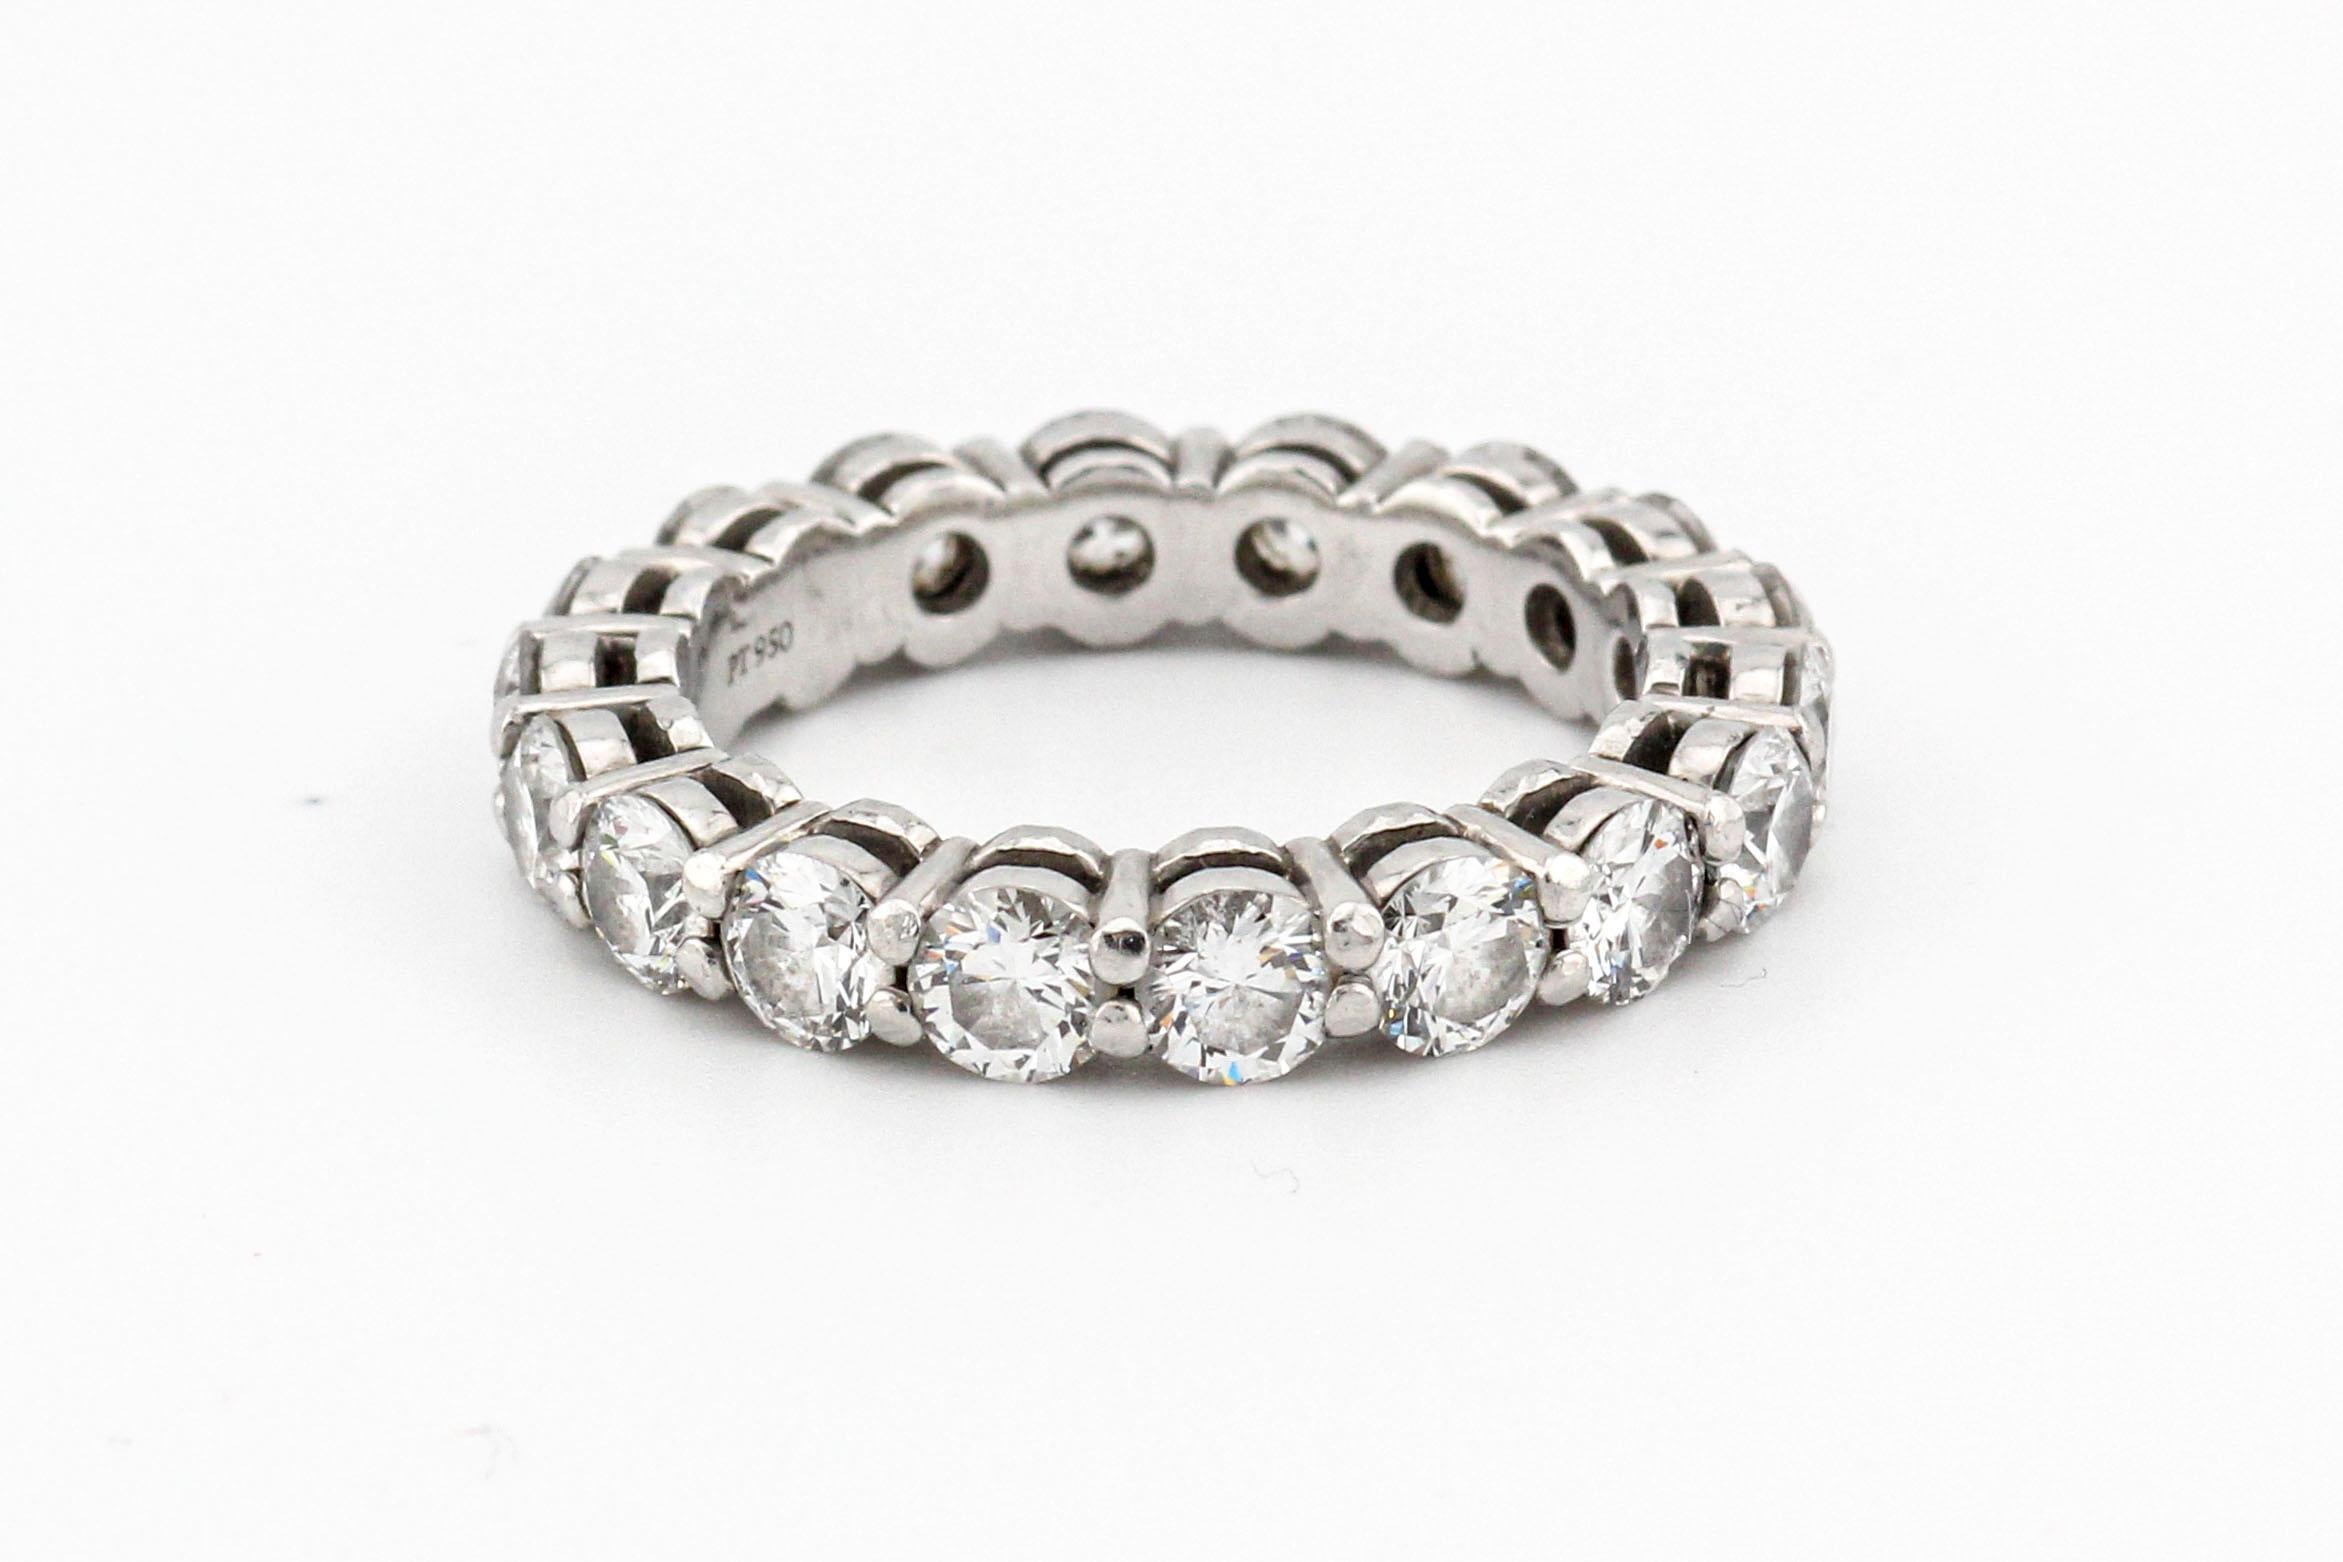 La collection Tiffany & Co. Diamond Platinum 3.7mm Shared Setting Band est un magnifique bijou qui incarne l'élégance intemporelle et l'artisanat exquis. Fabriquée par l'une des marques de joaillerie de luxe les plus renommées au monde, cette bague